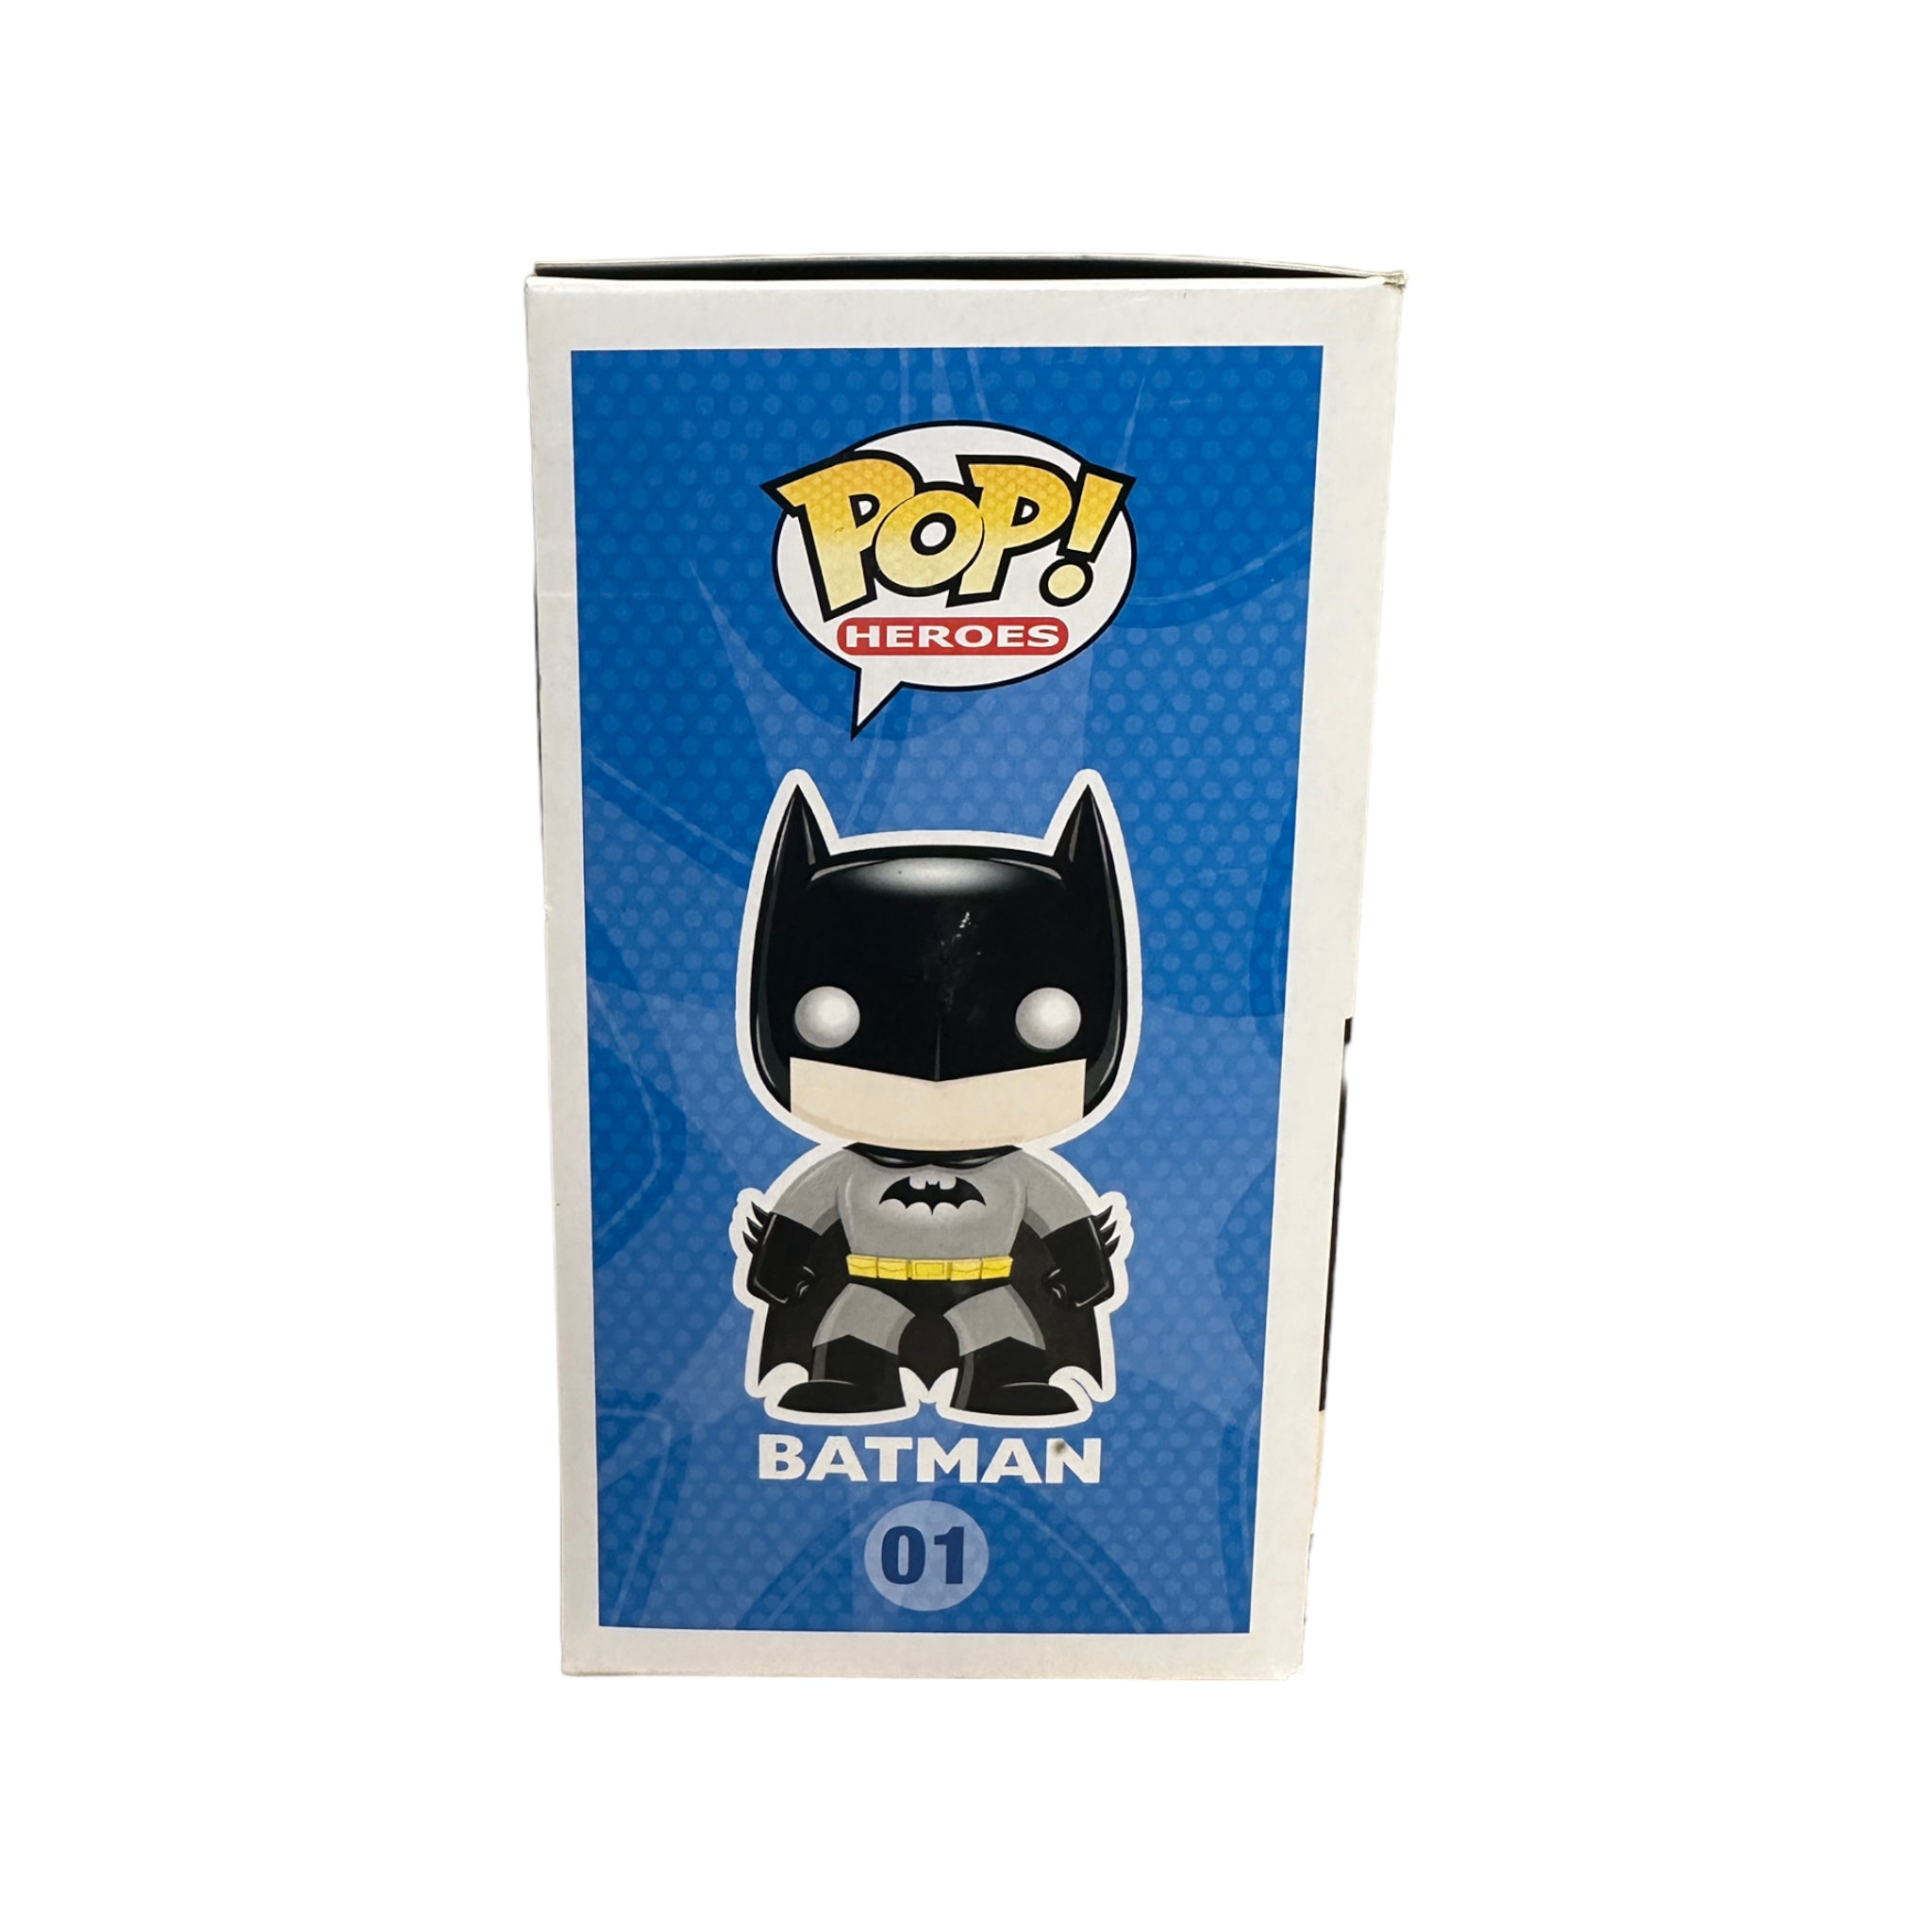 Batman #01 (Flashpoint) Funko Pop! - DC Universe - NYCC 2011 Exclusive LE480 Pcs - Condition 8/10